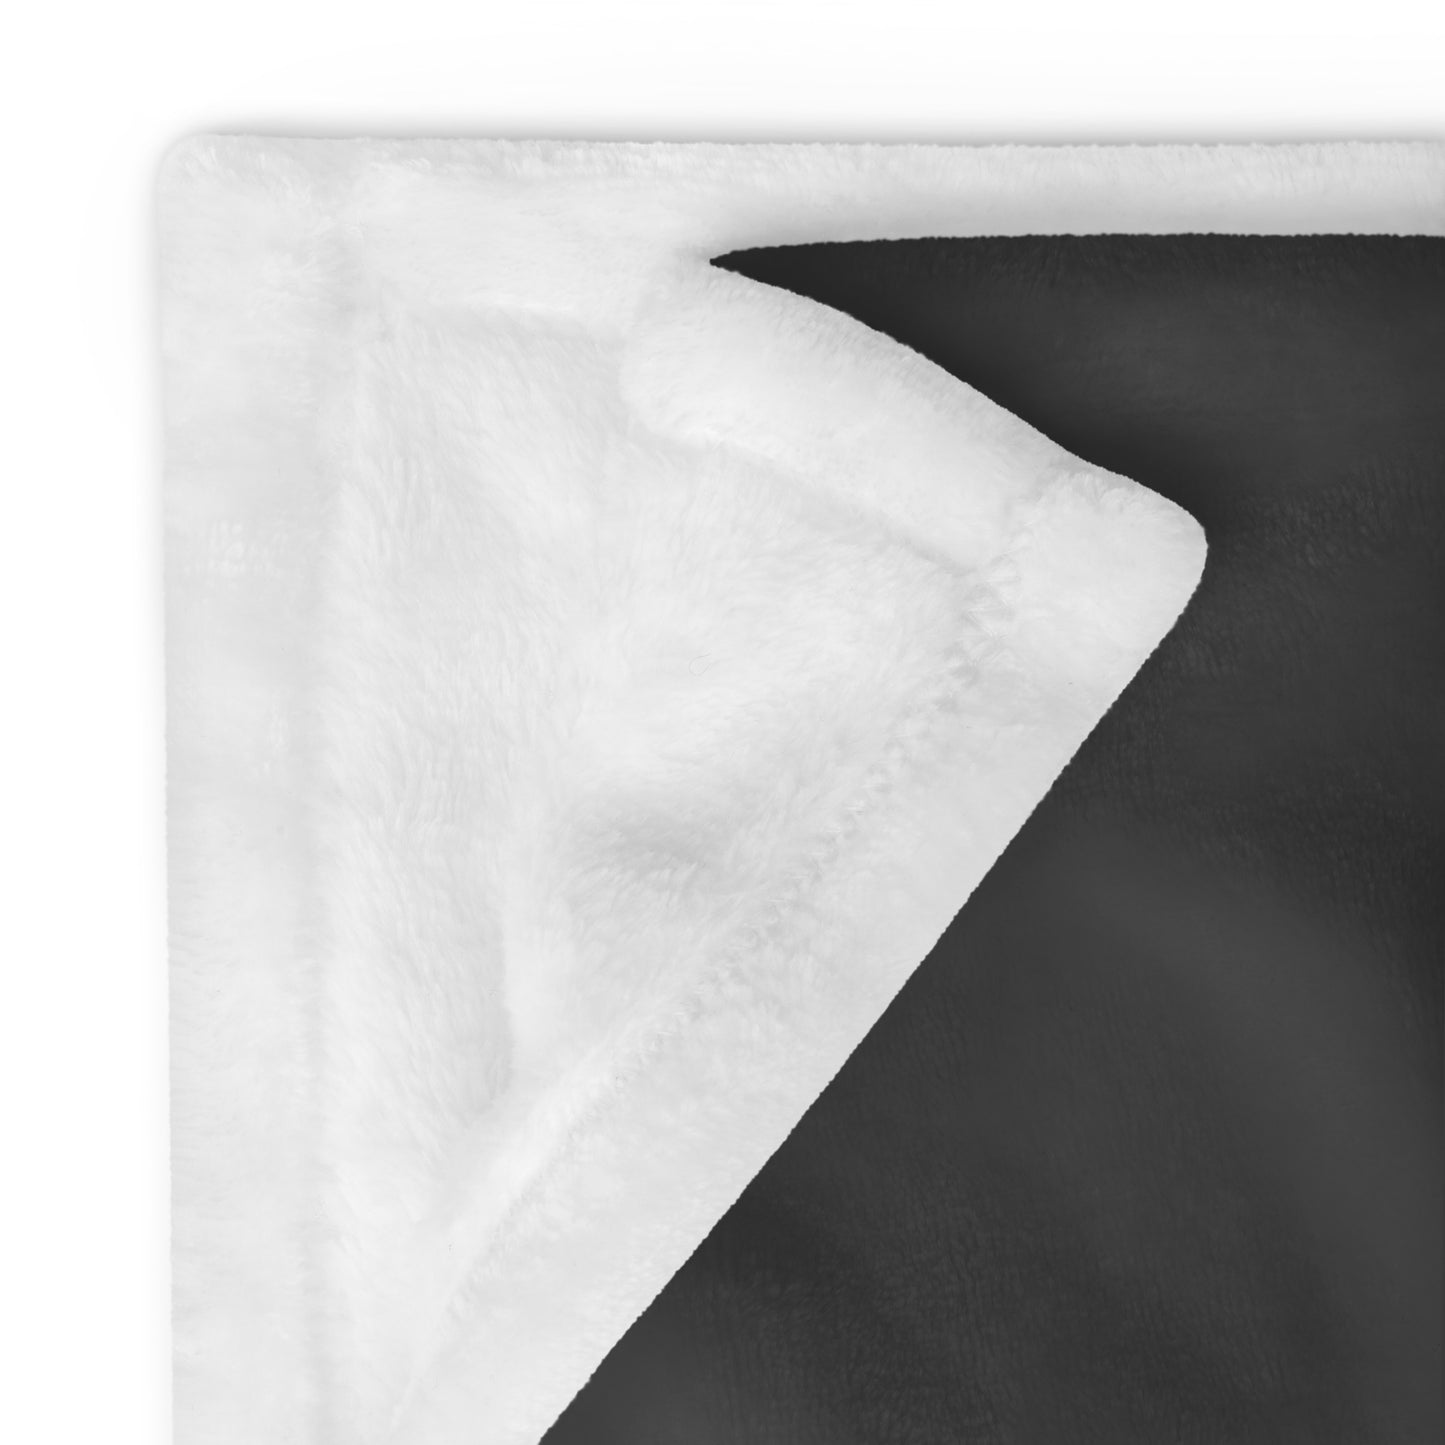 Amarosa dragon Throw Blanket Grey by Stormseye Design